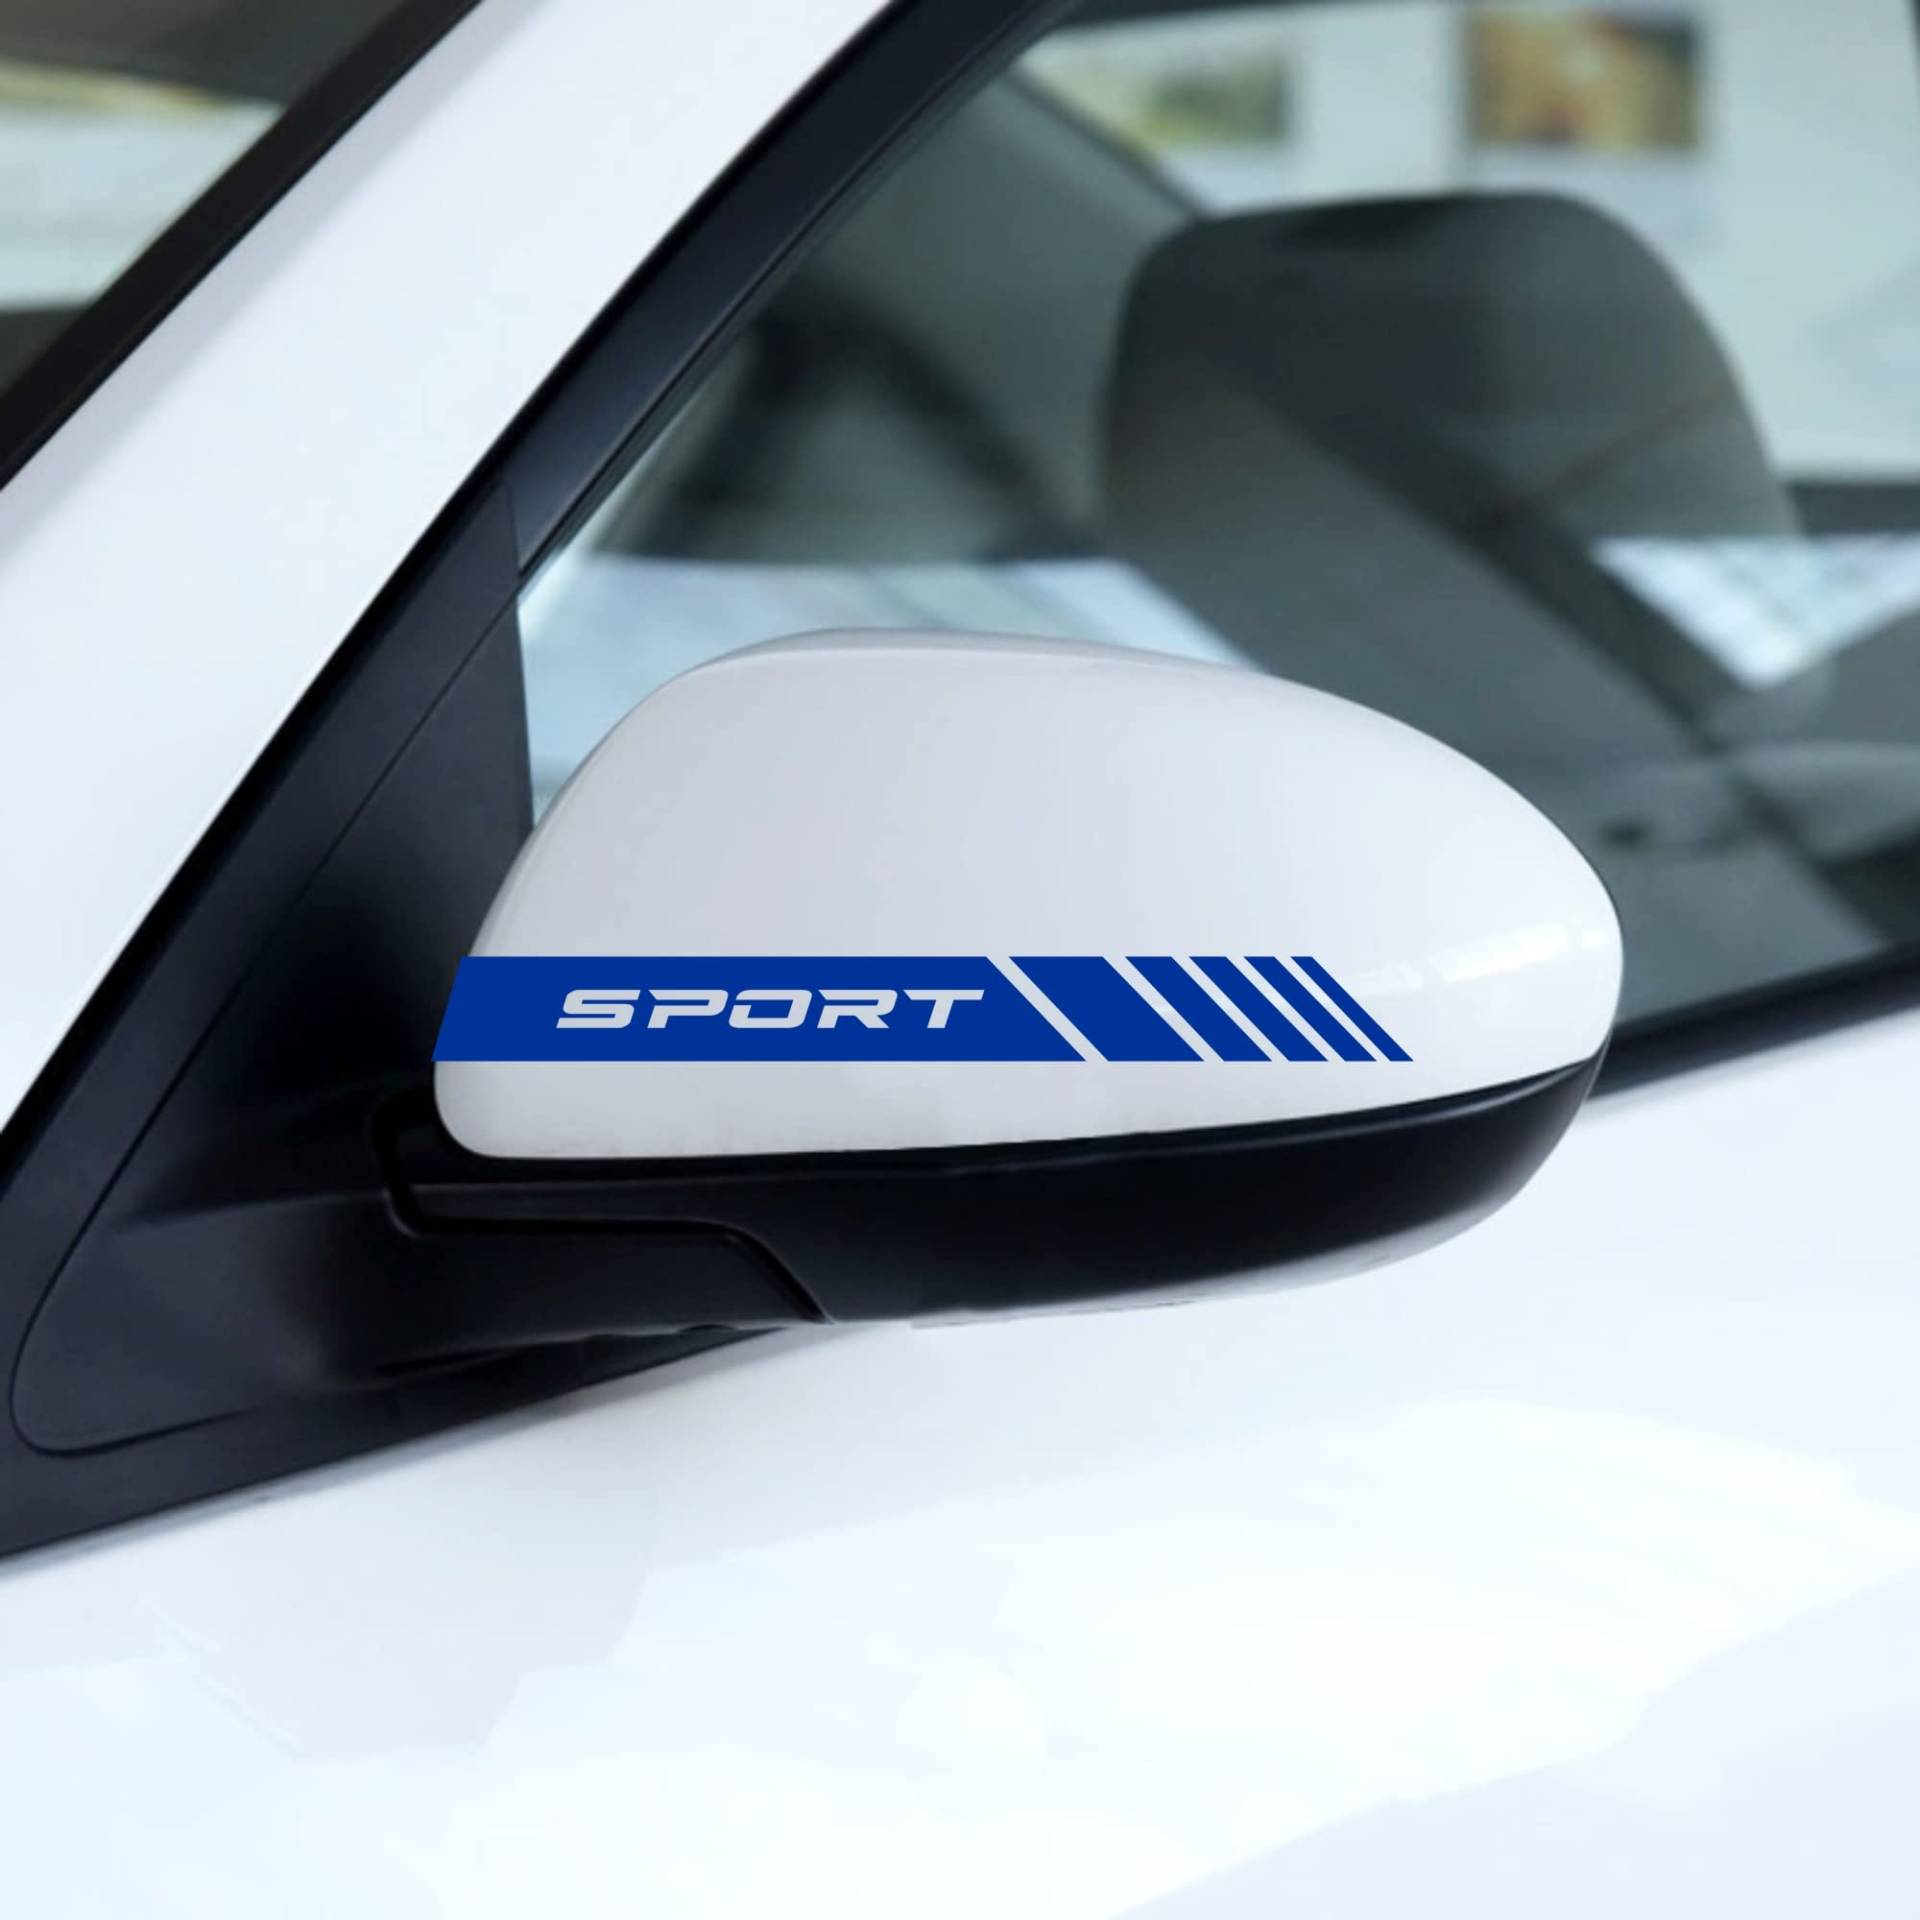 AUTODOMY Rückspiegel Aufkleber Stickers Auto mit Streifen Design Stripes Tuning Packet mit 6 Einheiten mit unterschiedlichen Breiten Sportdesign für das Auto (Blau) von AUTODOMY